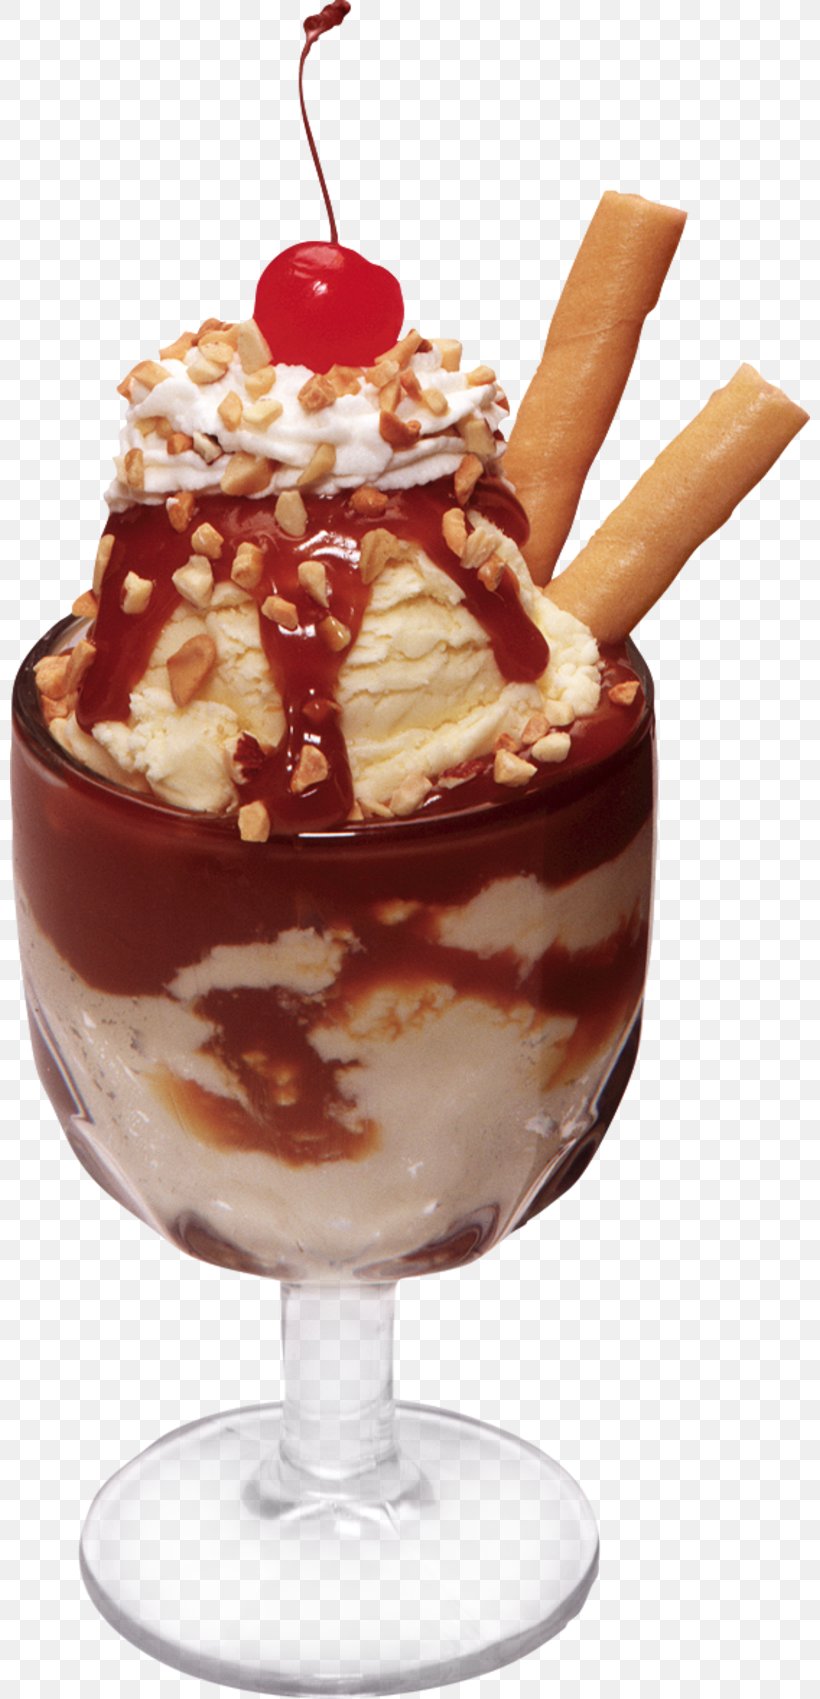 Ice Cream Cones Sundae Chocolate Ice Cream, PNG, 800x1699px, Ice Cream Cones, Chocolate, Chocolate Cake, Chocolate Ice Cream, Chocolate Syrup Download Free